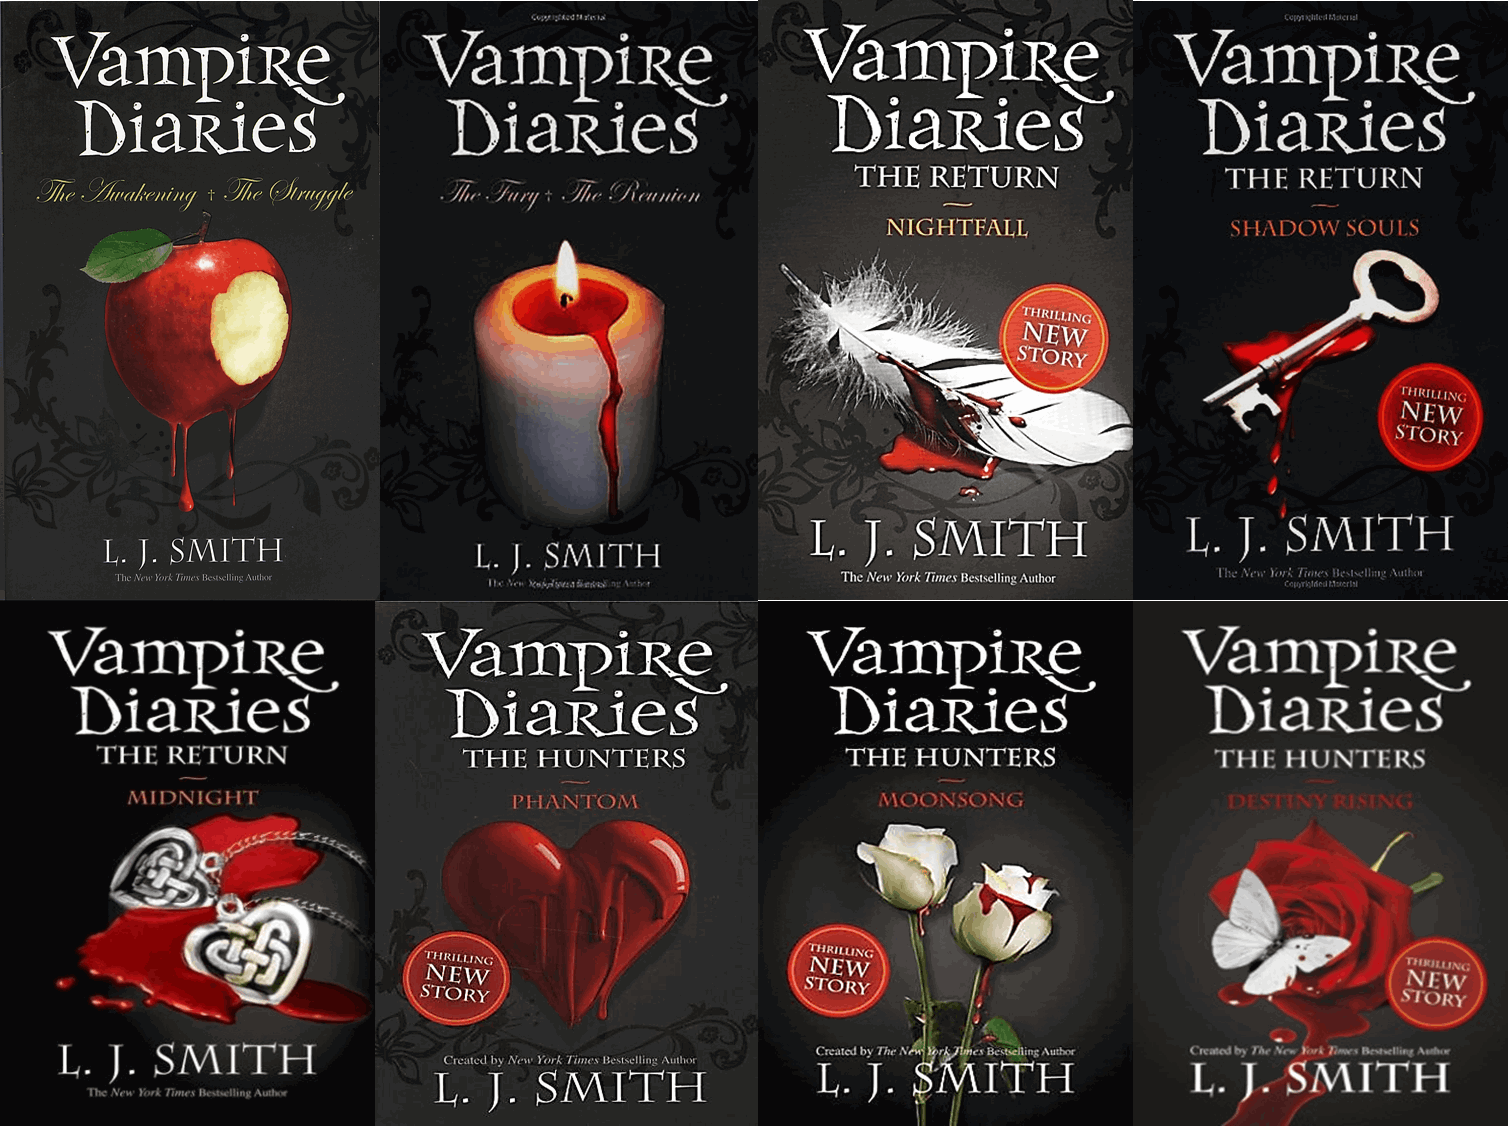 the vampire diaries: the awakening